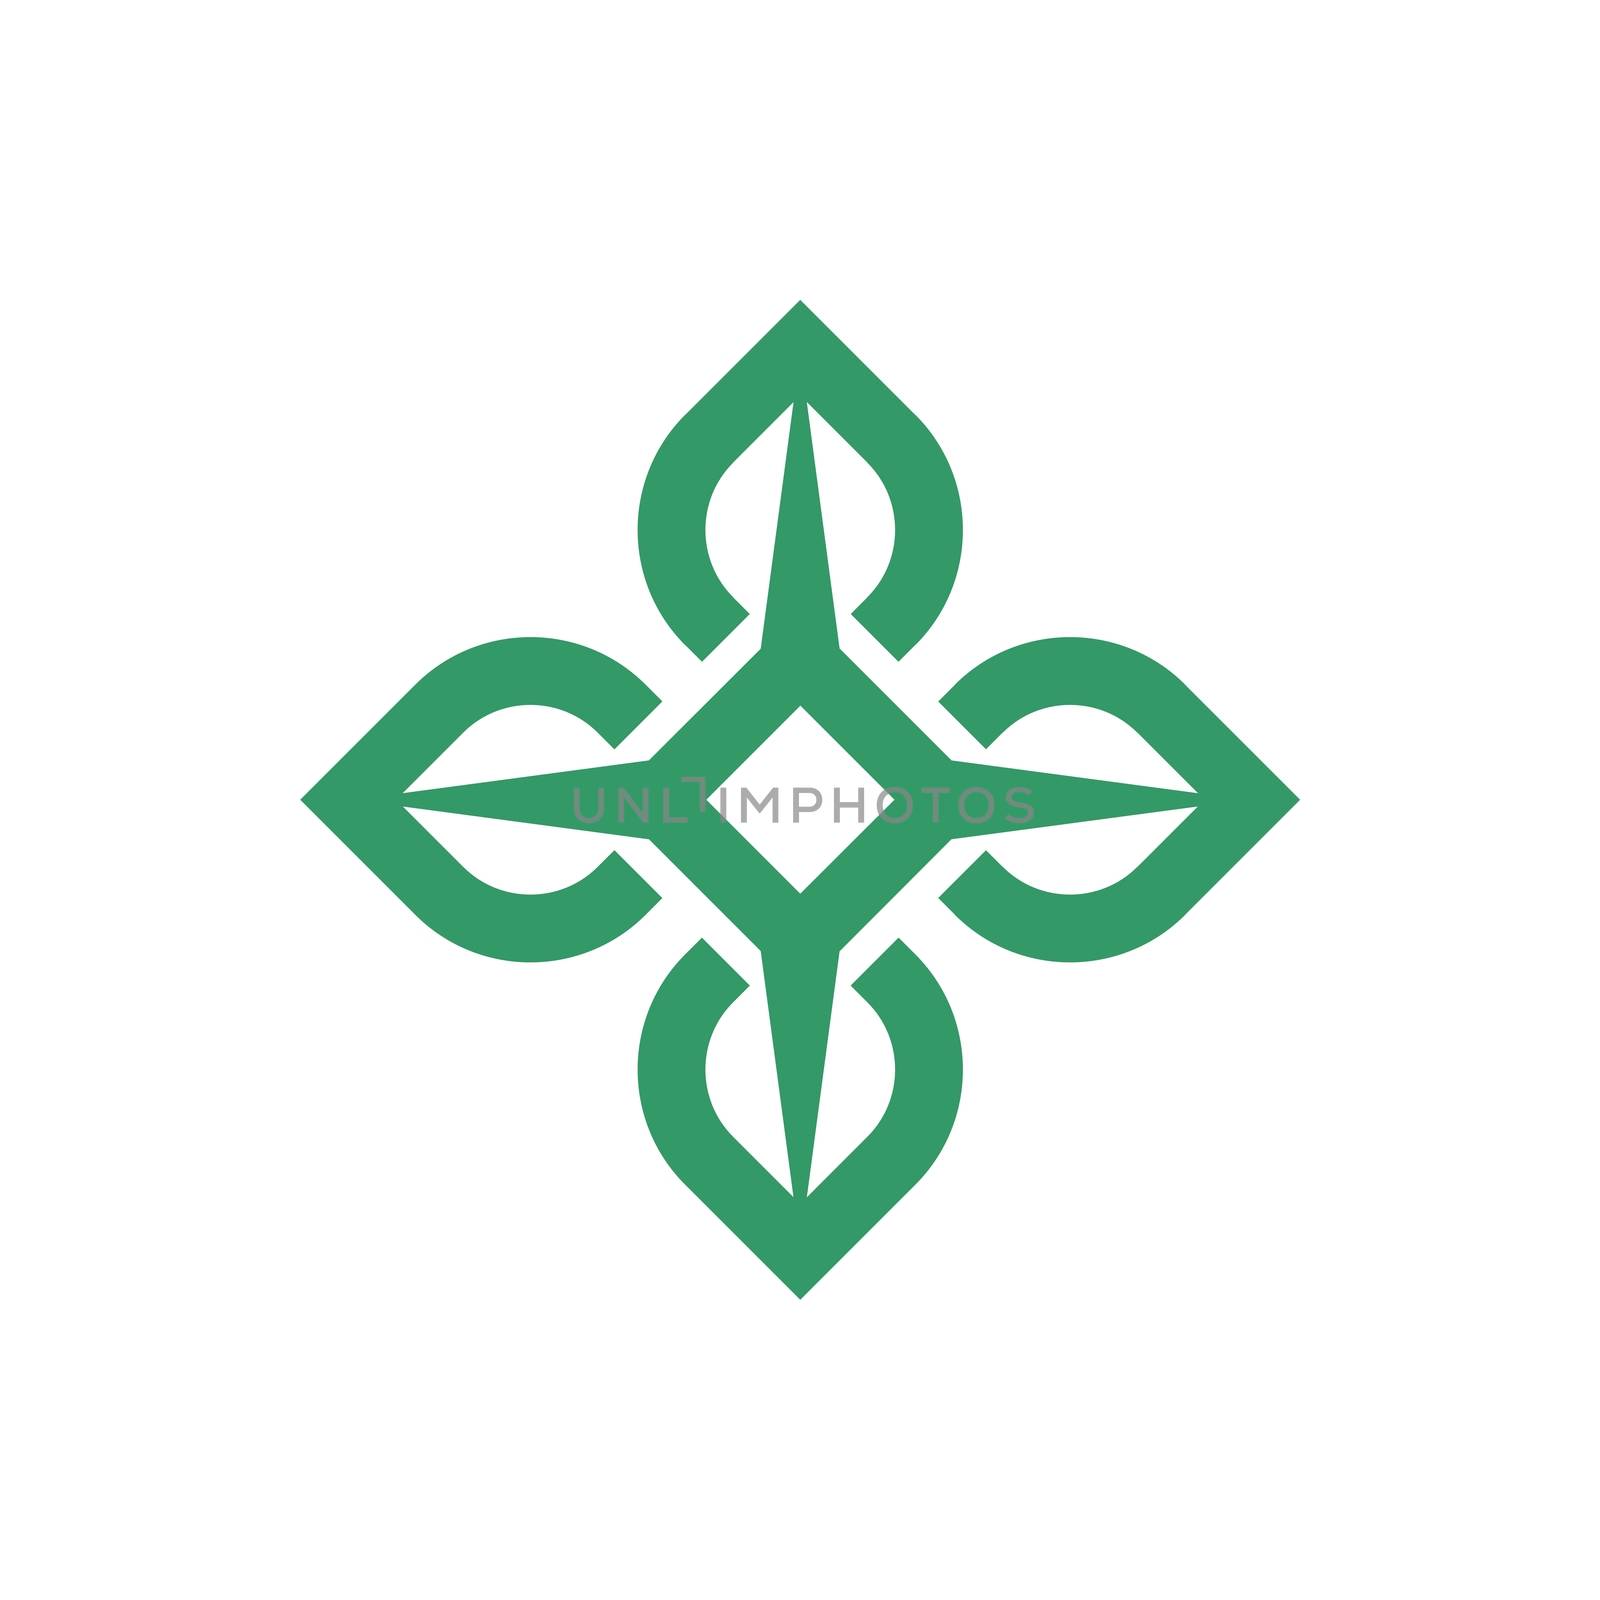 Green Star Flower Ornamental logo template Illustration Design. Vector EPS 10.